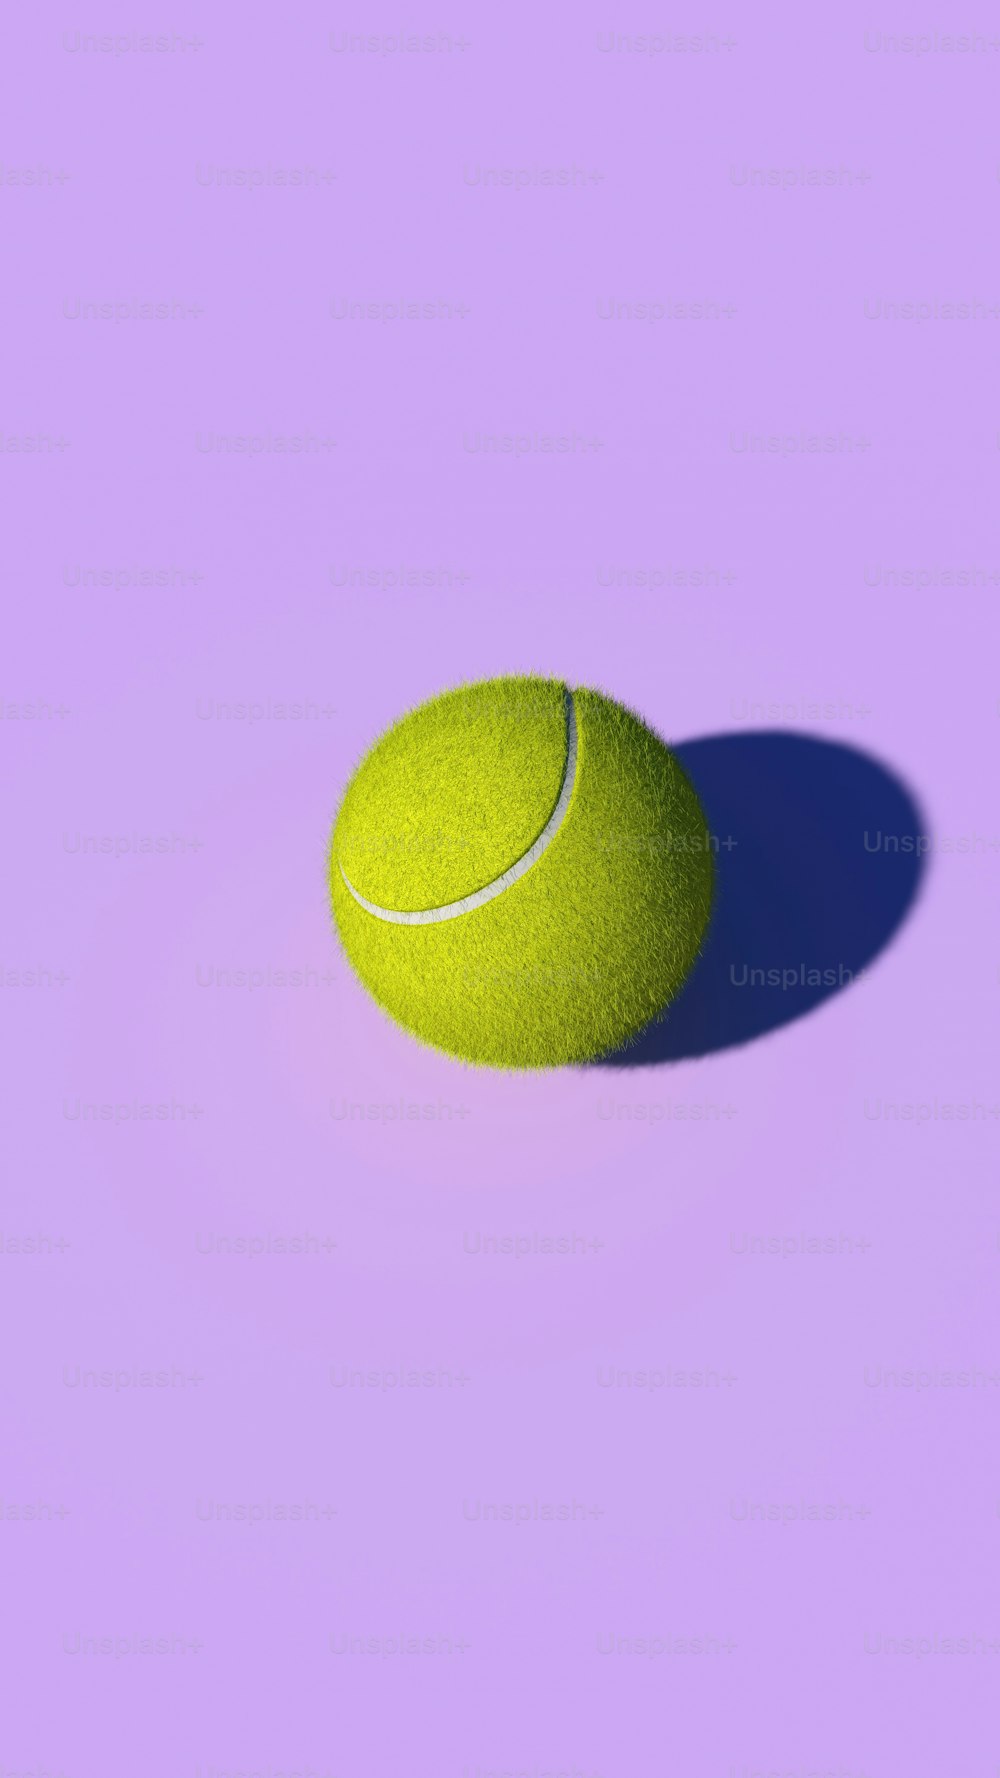 ein gelber Tennisball auf violettem Hintergrund